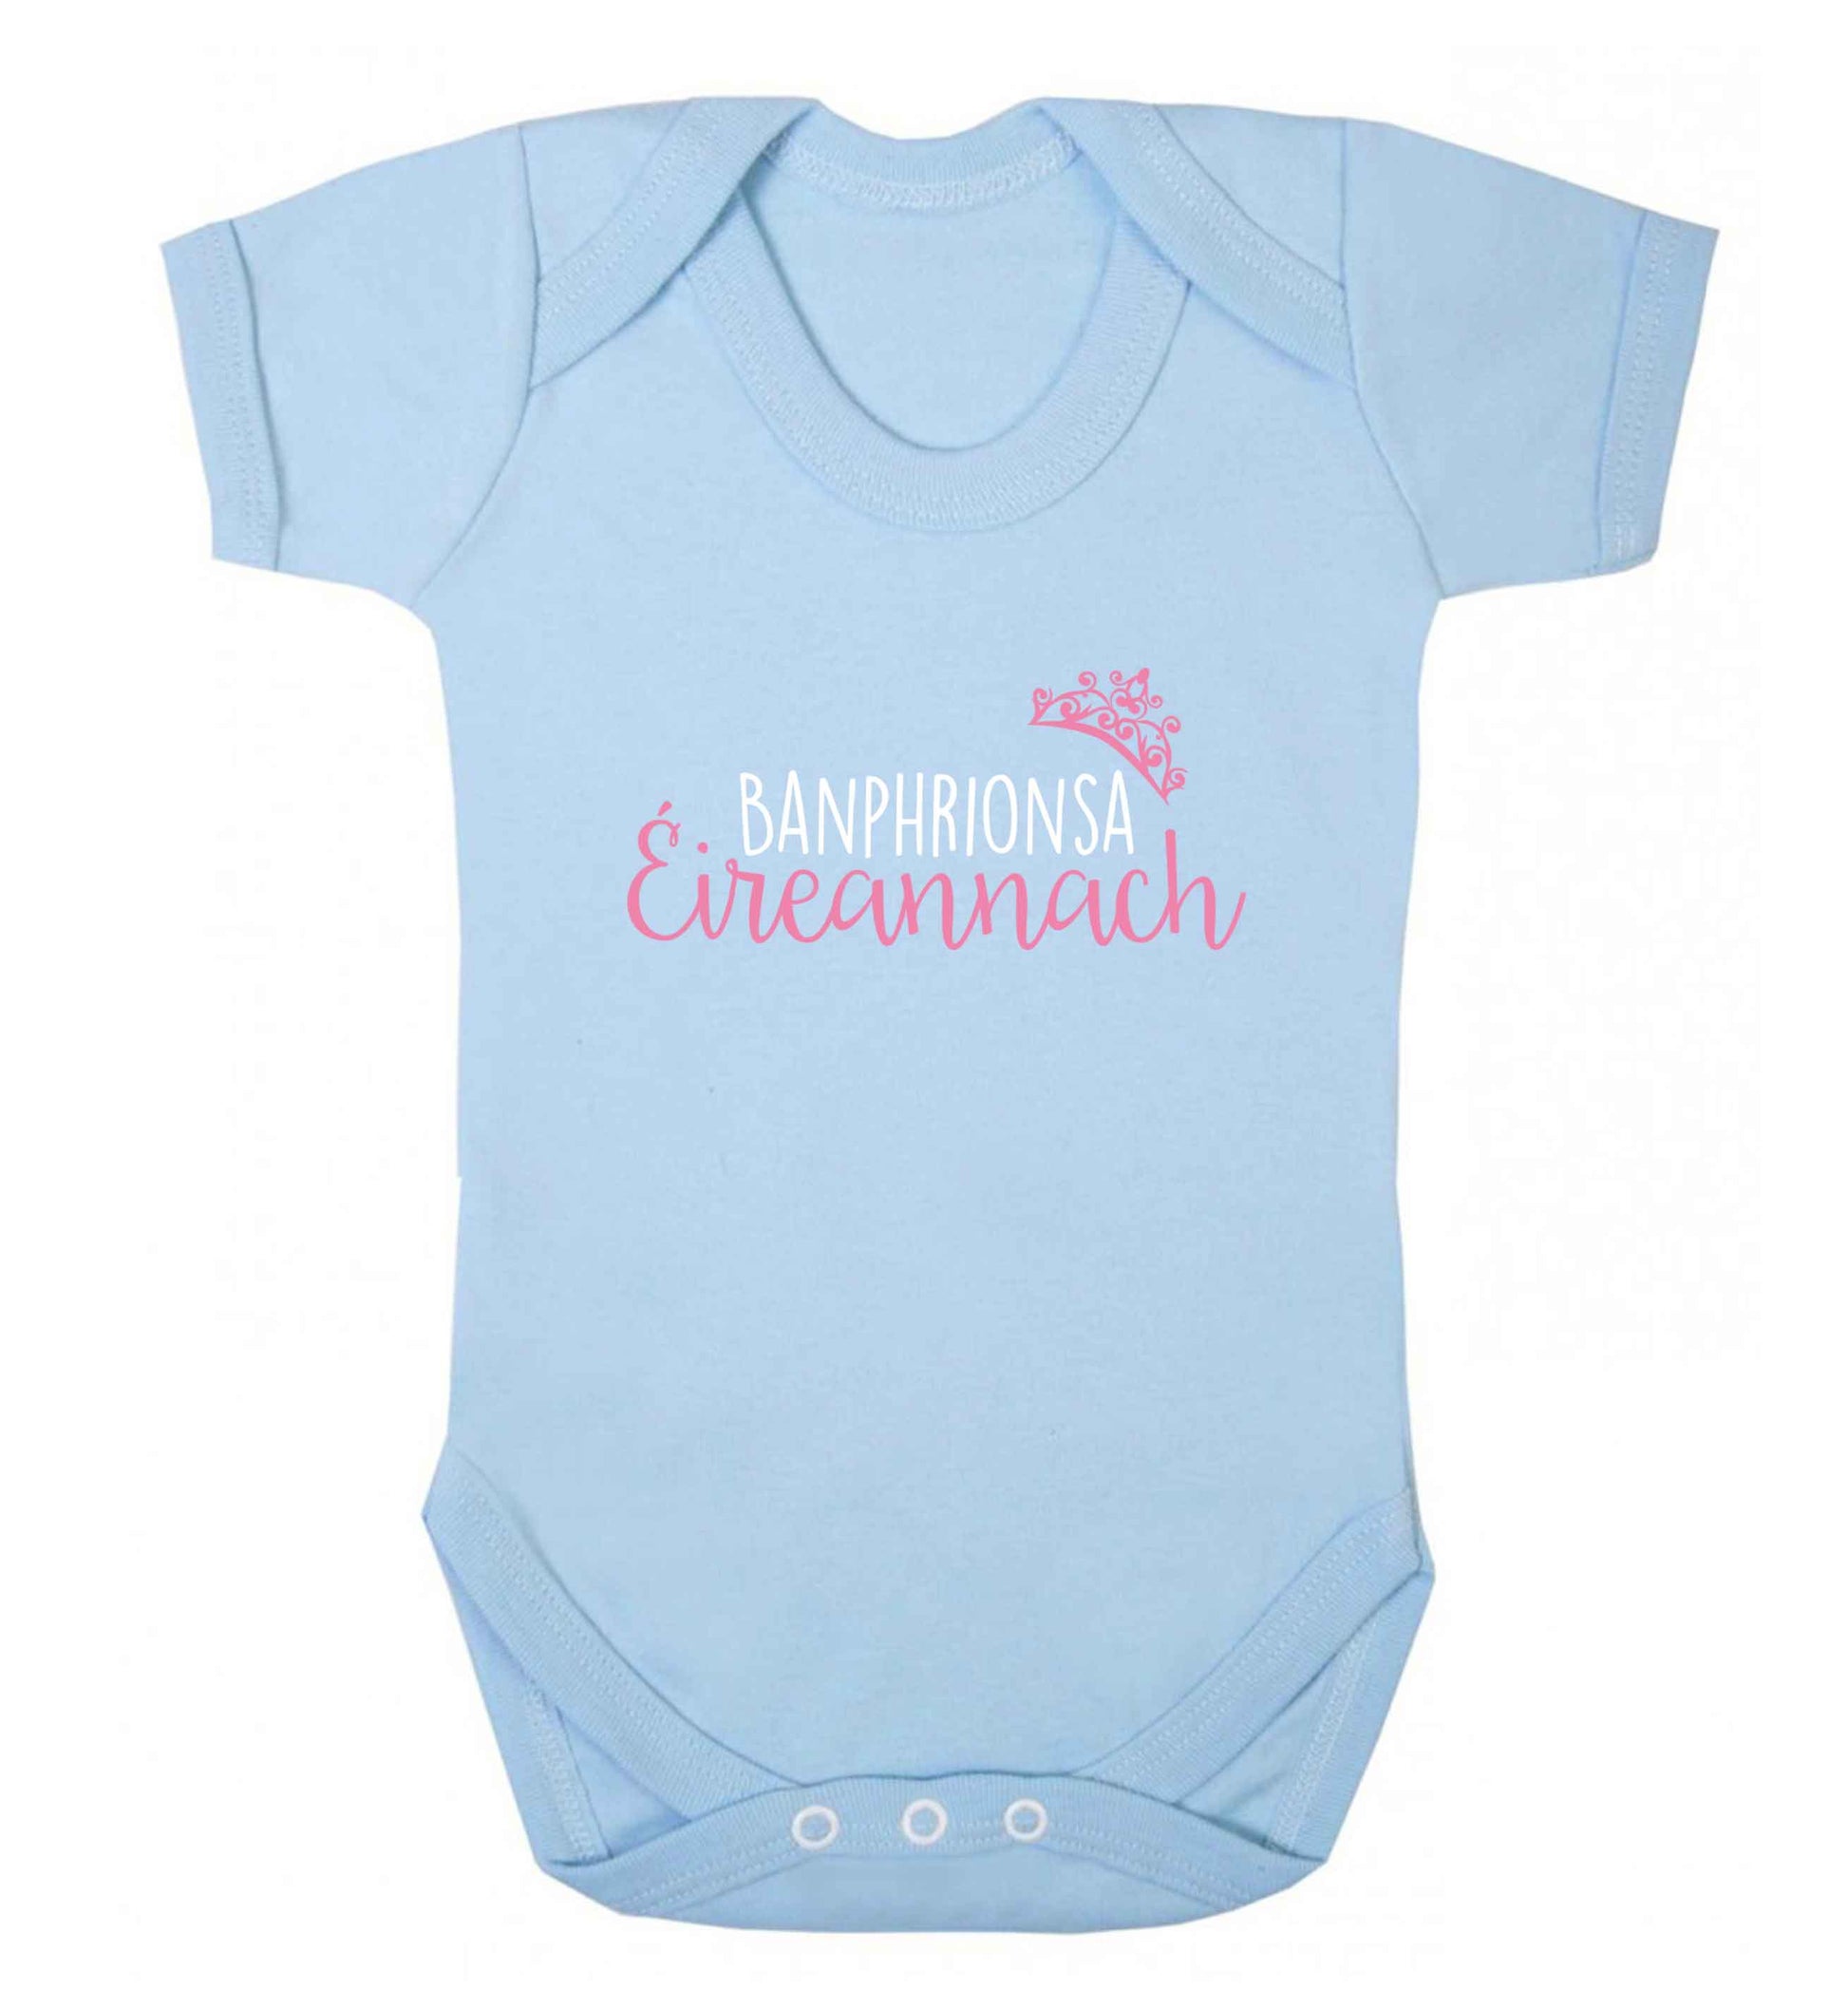 Banphrionsa eireannach baby vest pale blue 18-24 months